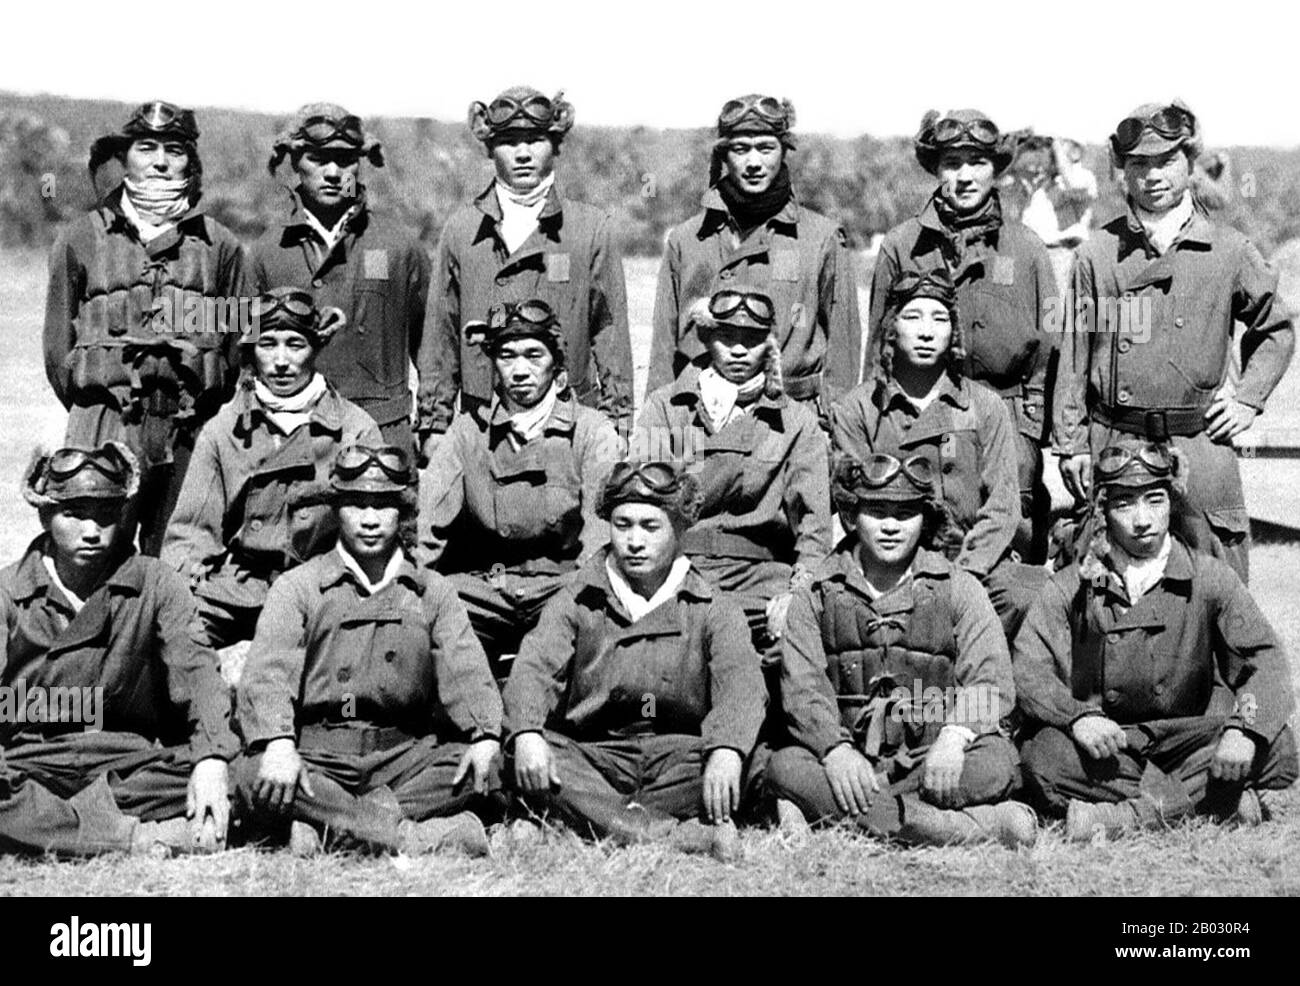 Mehrere dieser Flieger gehörten zu den obersten japanischen Assen, darunter Saburo Sakai (mittlere Reihe, zweite von links), Toshio Ota (linke, zweite Reihe) und Hiroyoshi Nishizawa (stehend, erste links). Die Tainan Air Group wurde im Oktober 1941 im japanisch besetzten Formosa (Taiwan) gebildet und war eine der bekanntesten und erfolgreichsten Luftgruppen des Kaiserlich japanischen Marineluftdienstes. Stockfoto